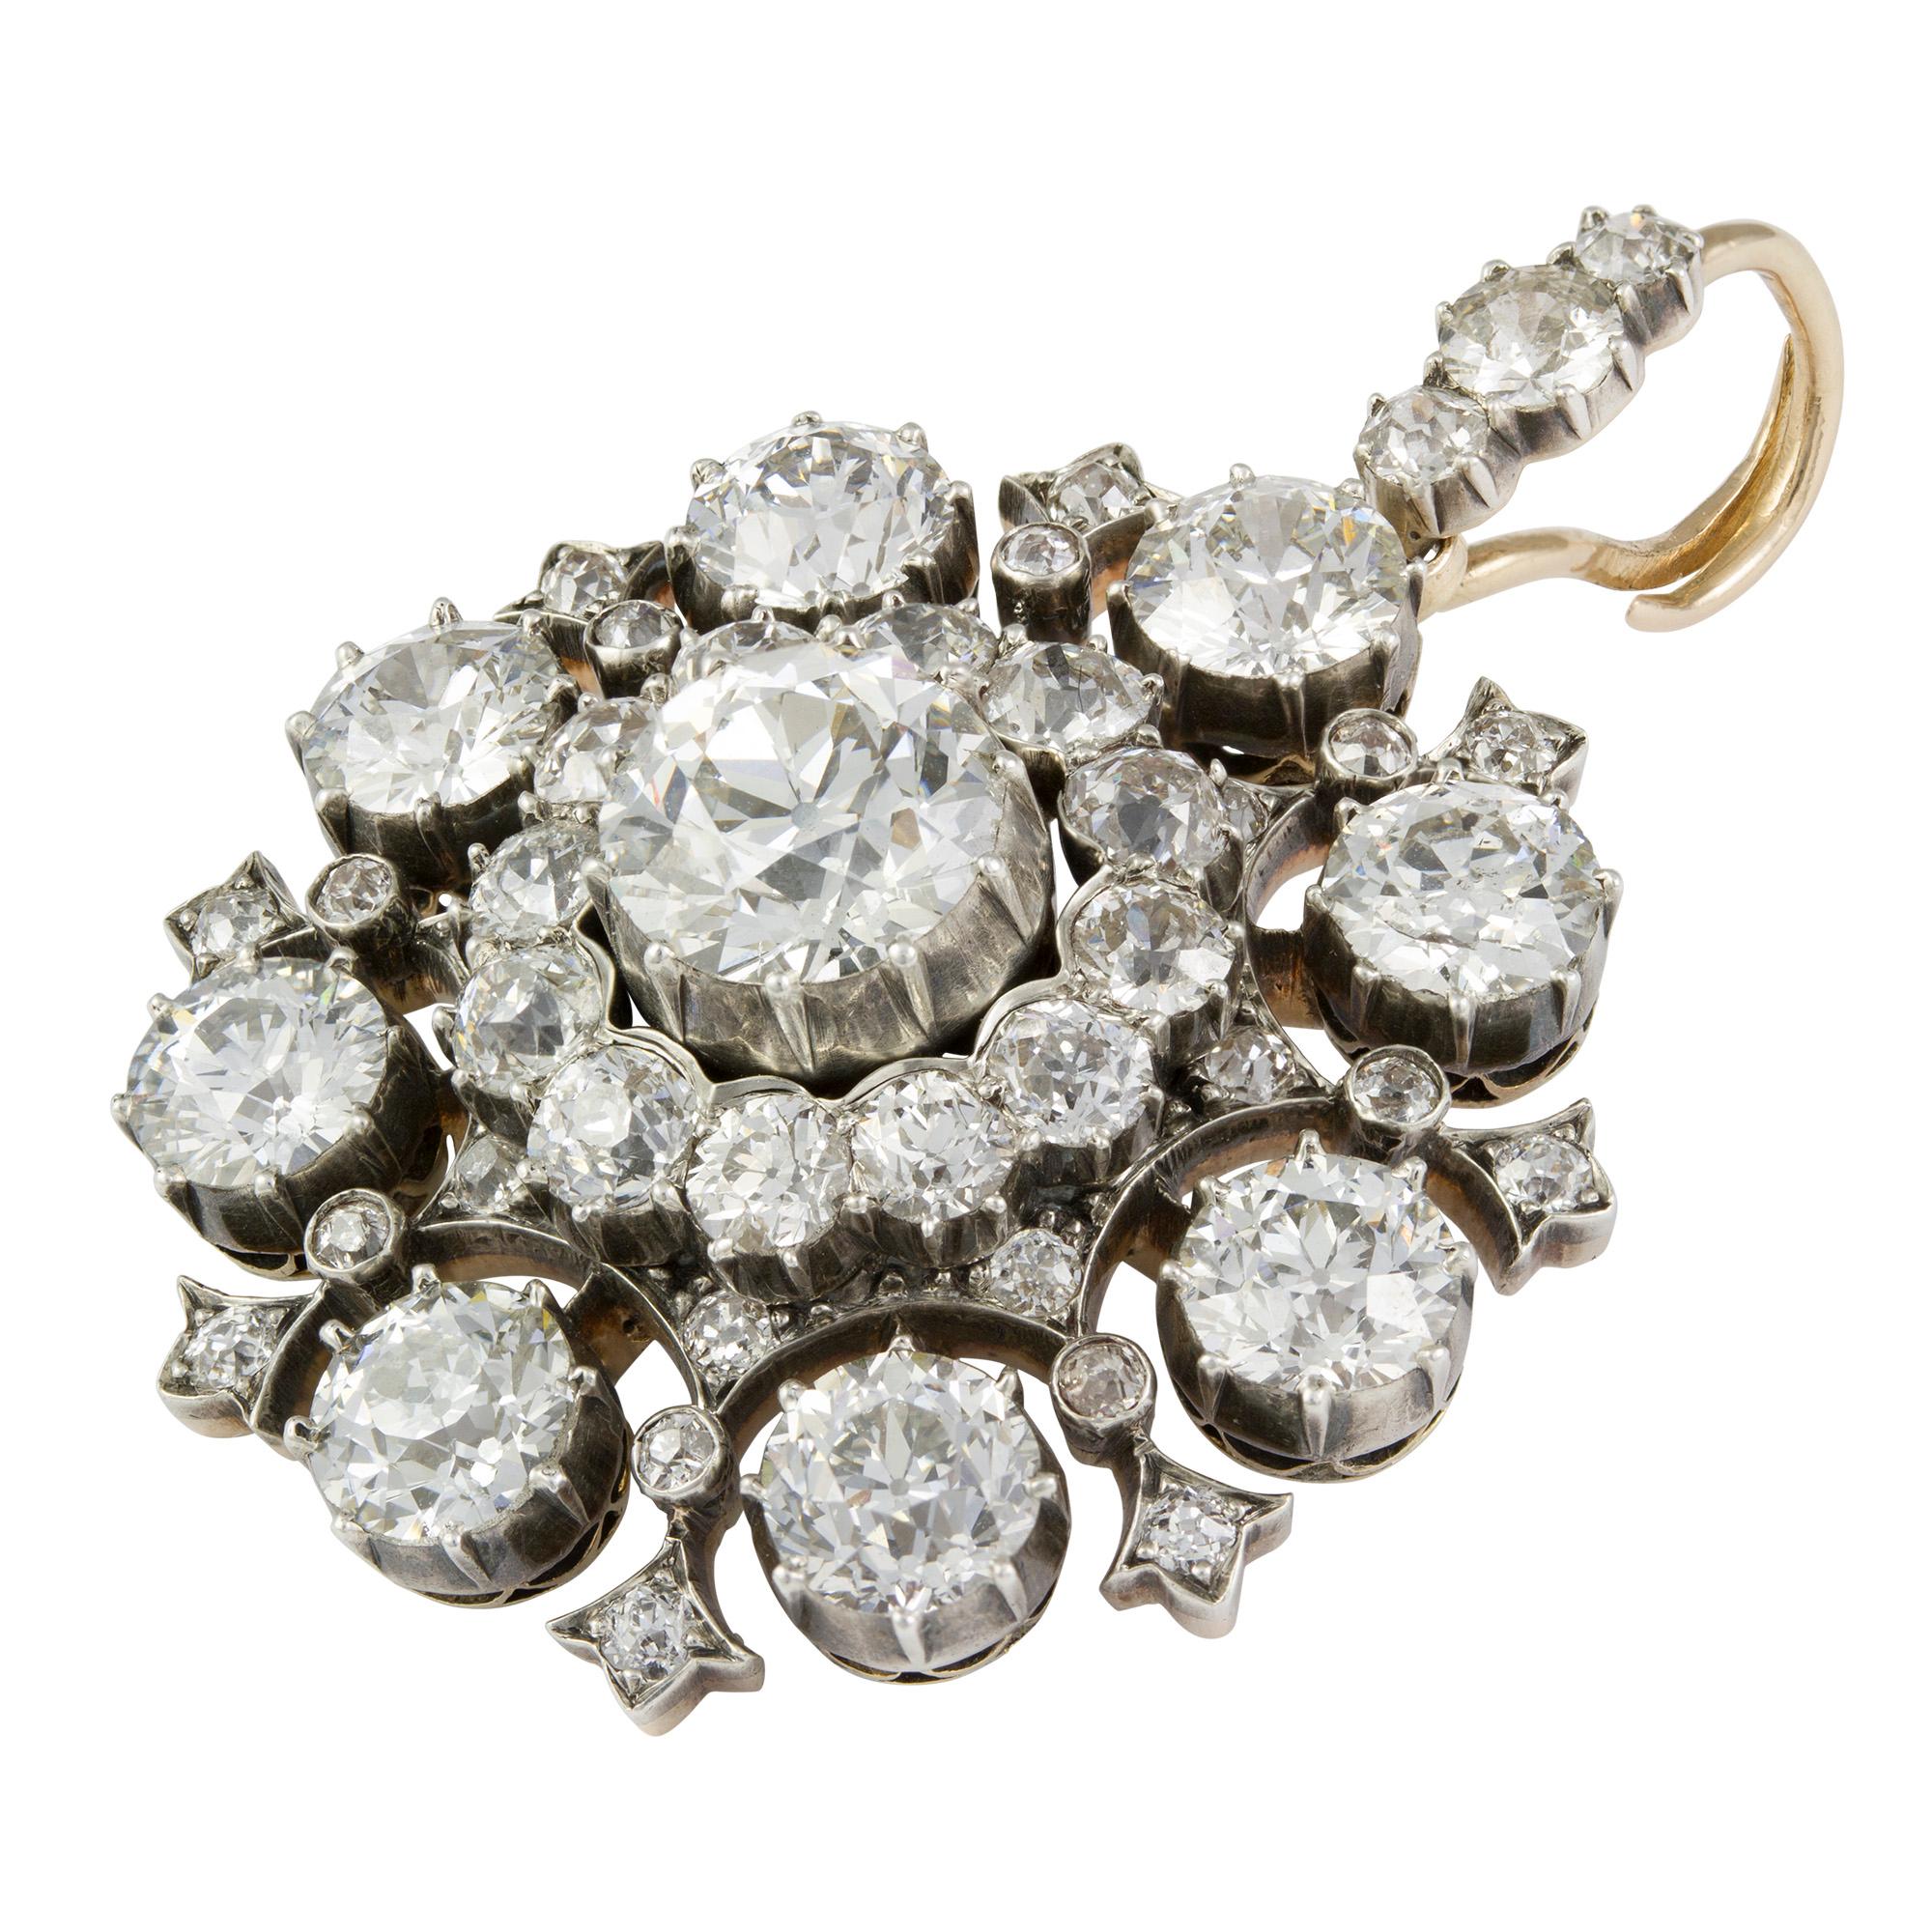 Collier de diamants et de perles de culture, la pièce maîtresse en diamant de style victorien, sertie au centre d'un diamant taille brillant ancien estimé à 1.65 carats, entouré d'une grappe de diamants taille ancienne, entourée de huit diamants